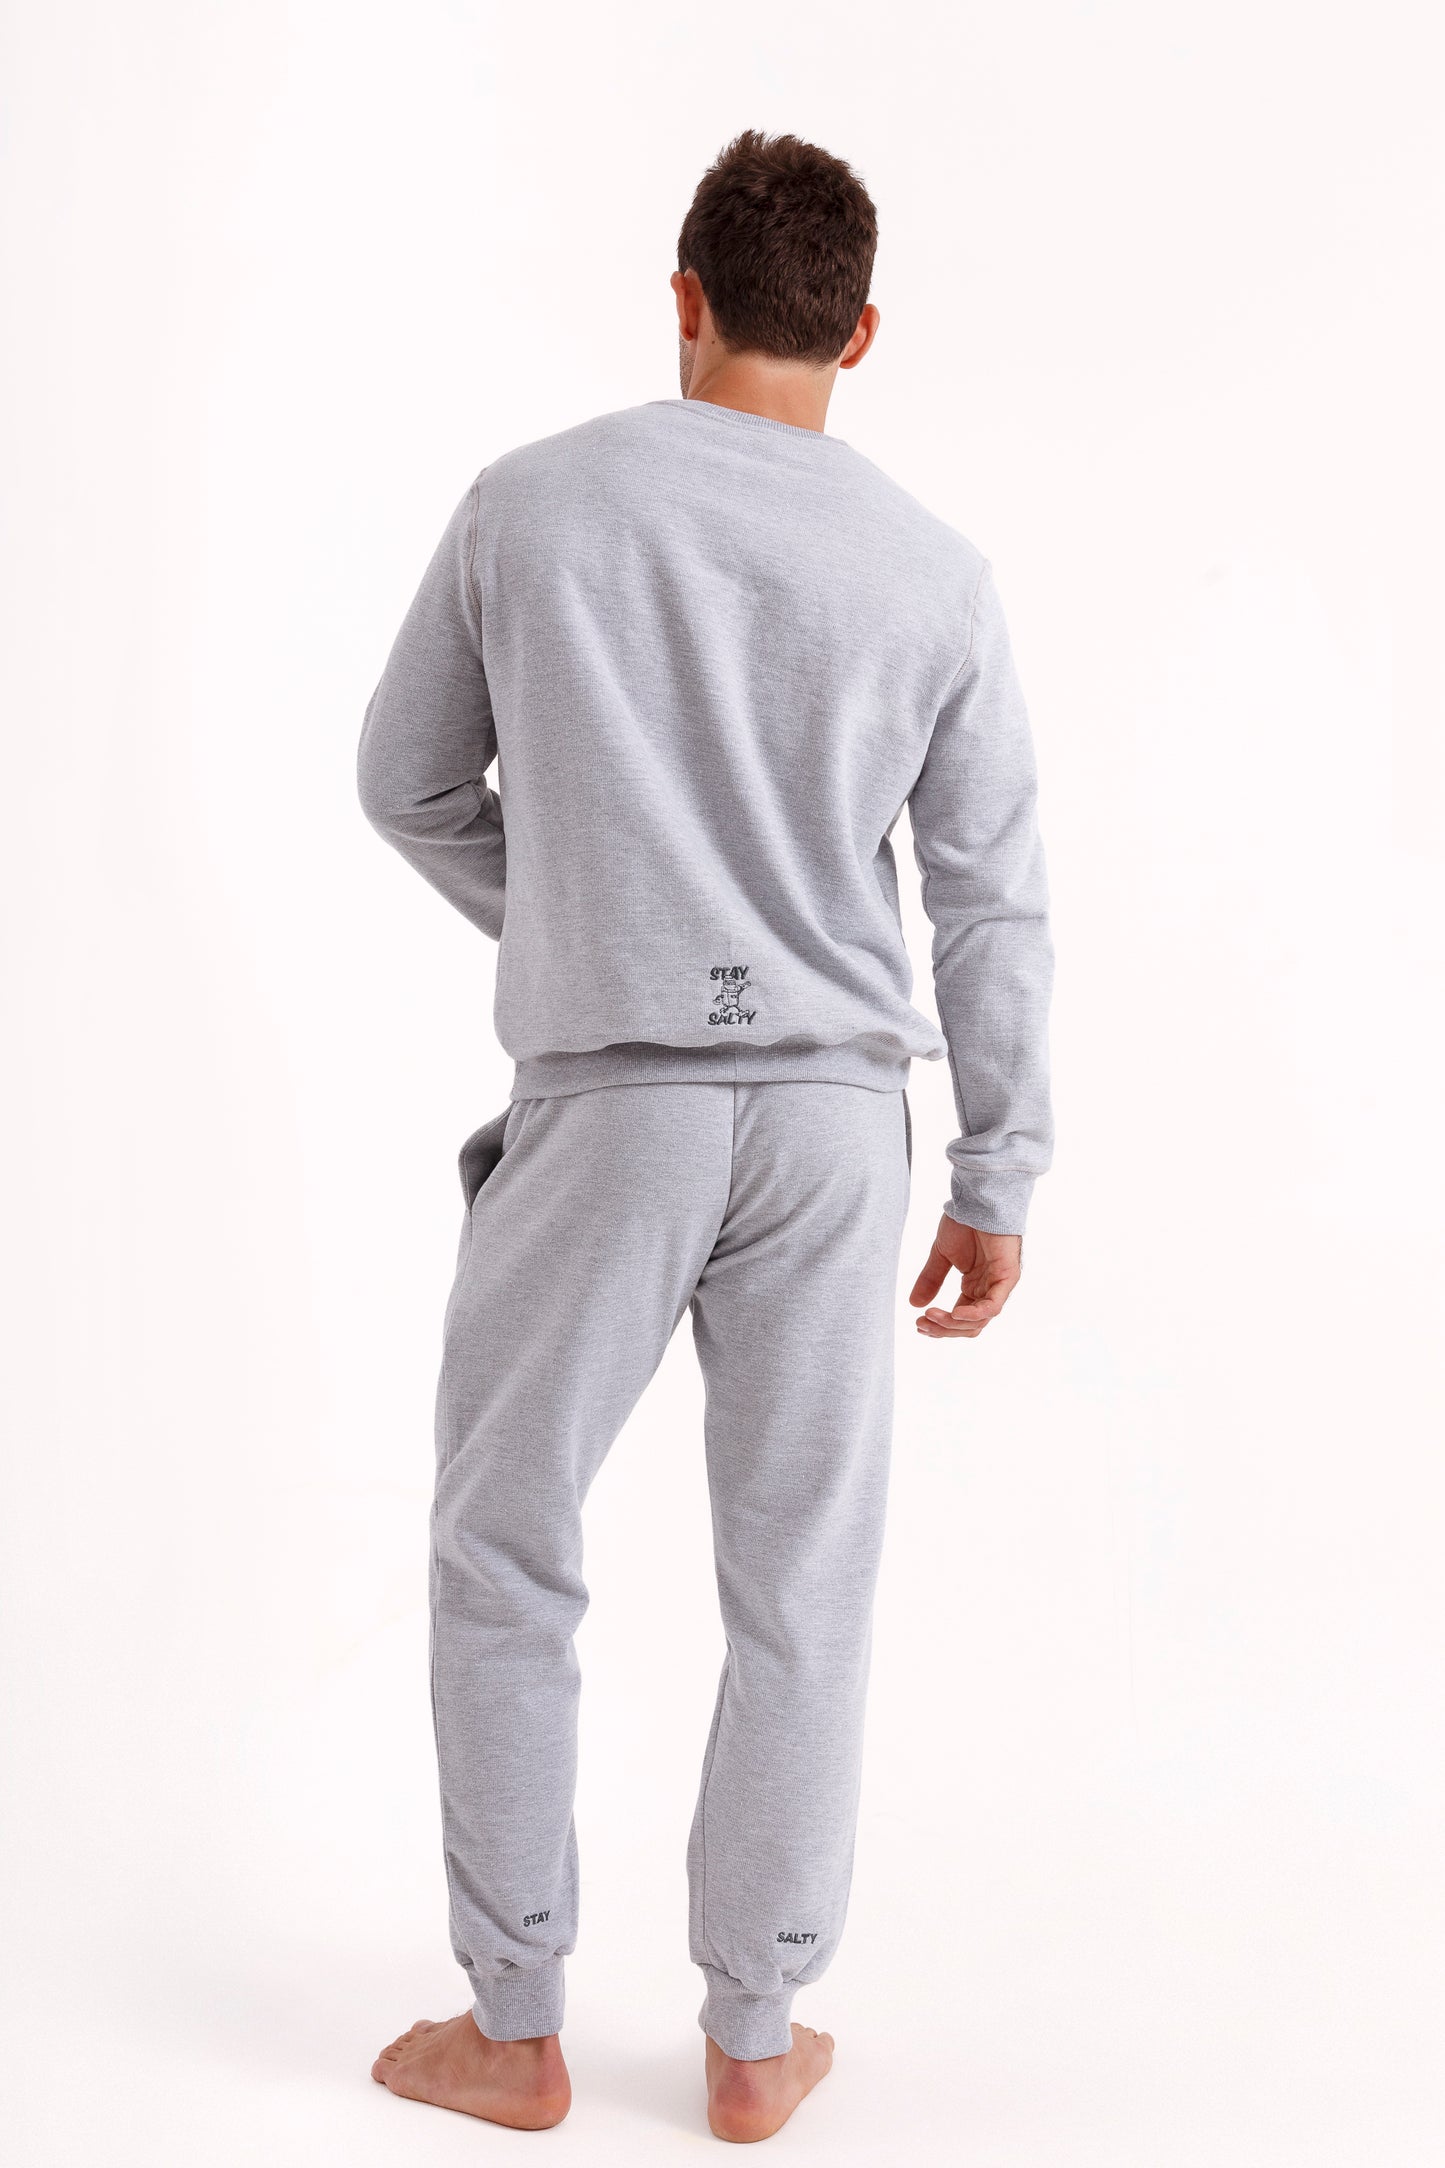 Unisex - Grey Sweatshirt